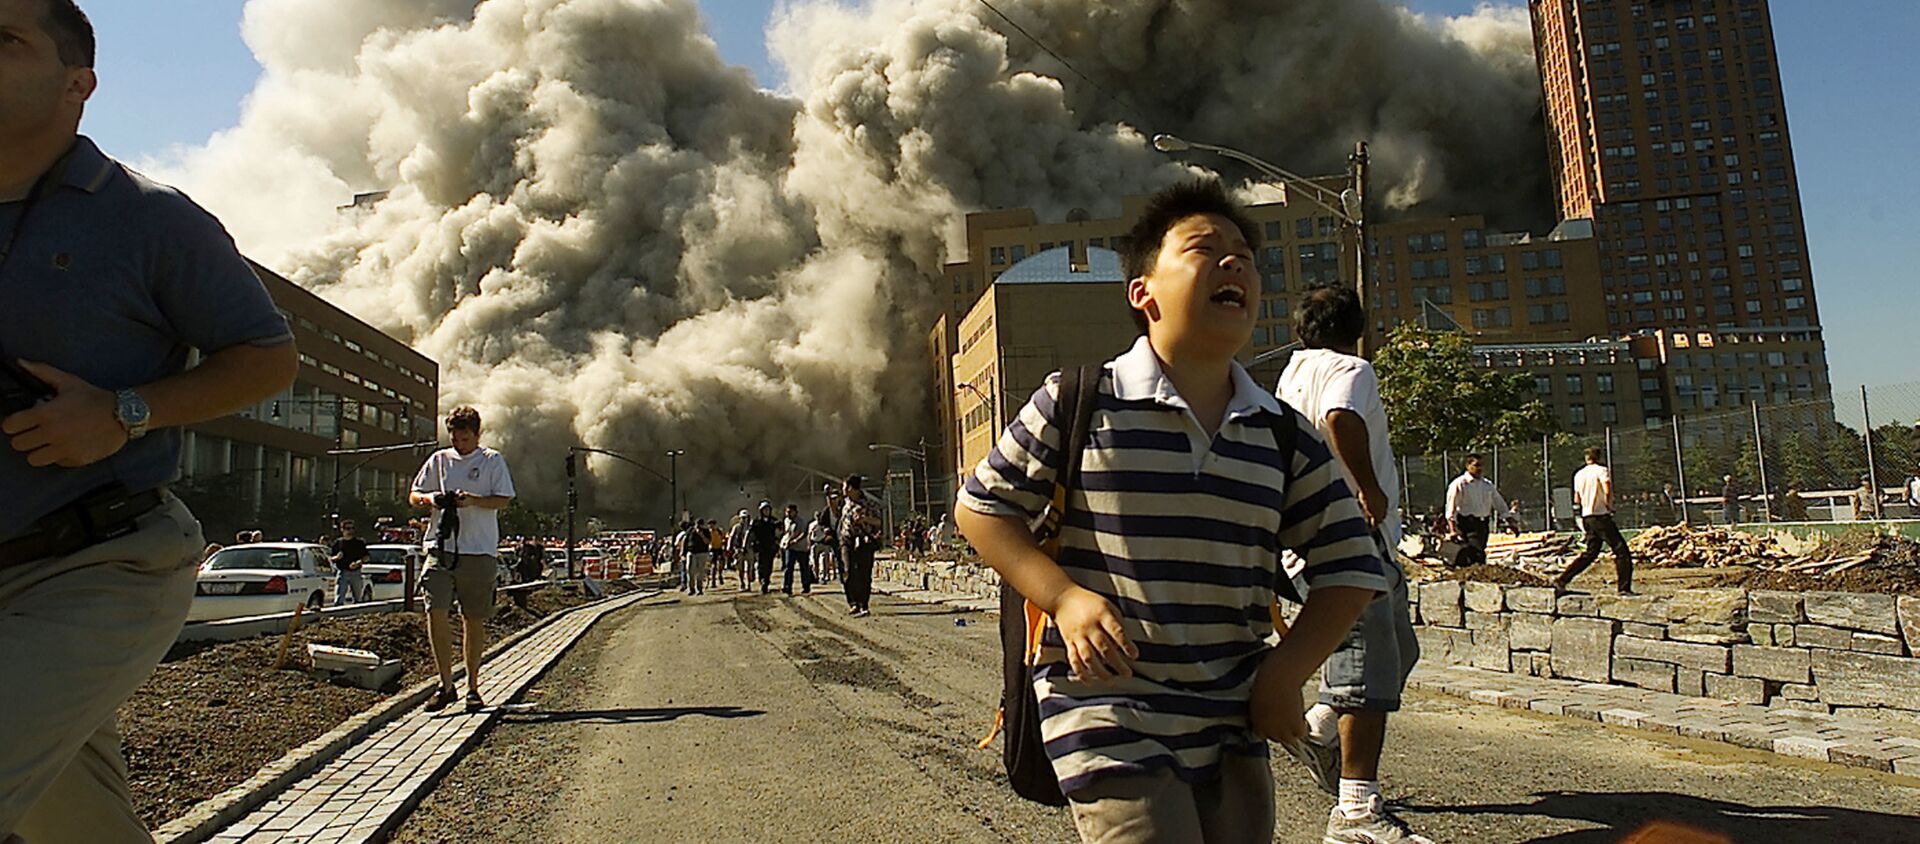 Људи беже из Светског трговинског центра након што је нападнут 11. септембра 2001. године. - Sputnik Србија, 1920, 12.09.2019